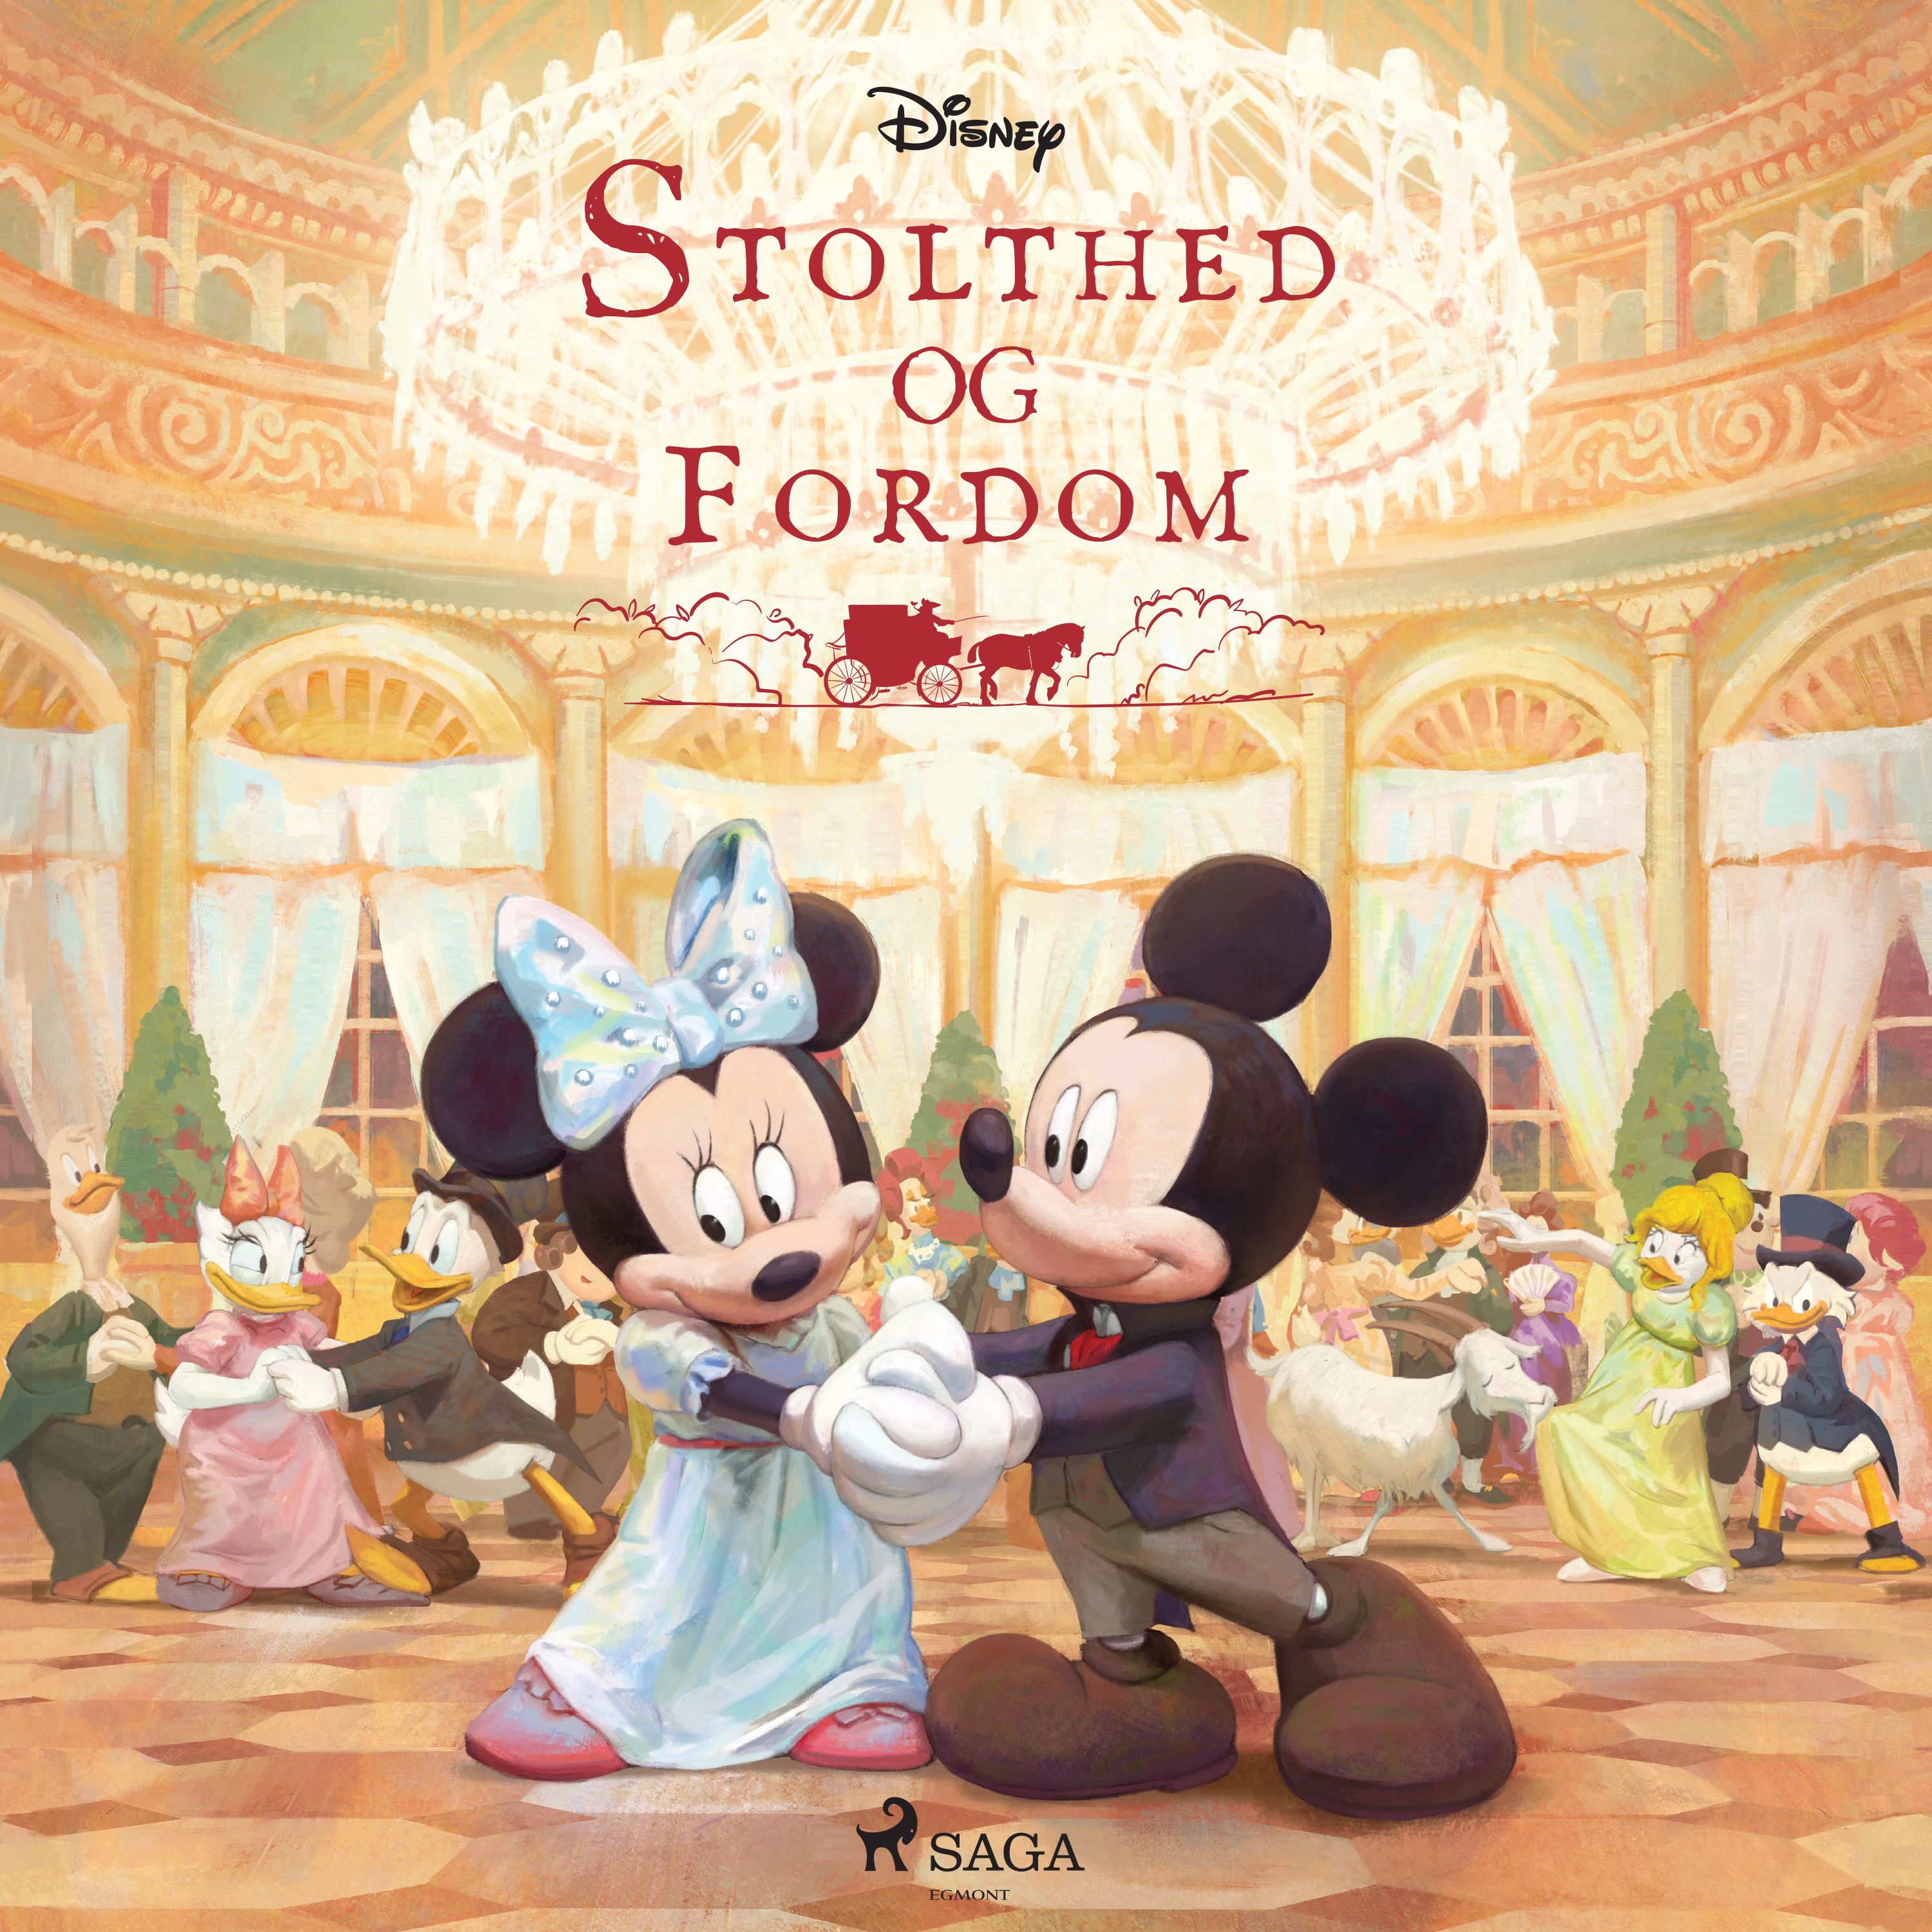 Stolthed og fordom, ljudbok av Disney